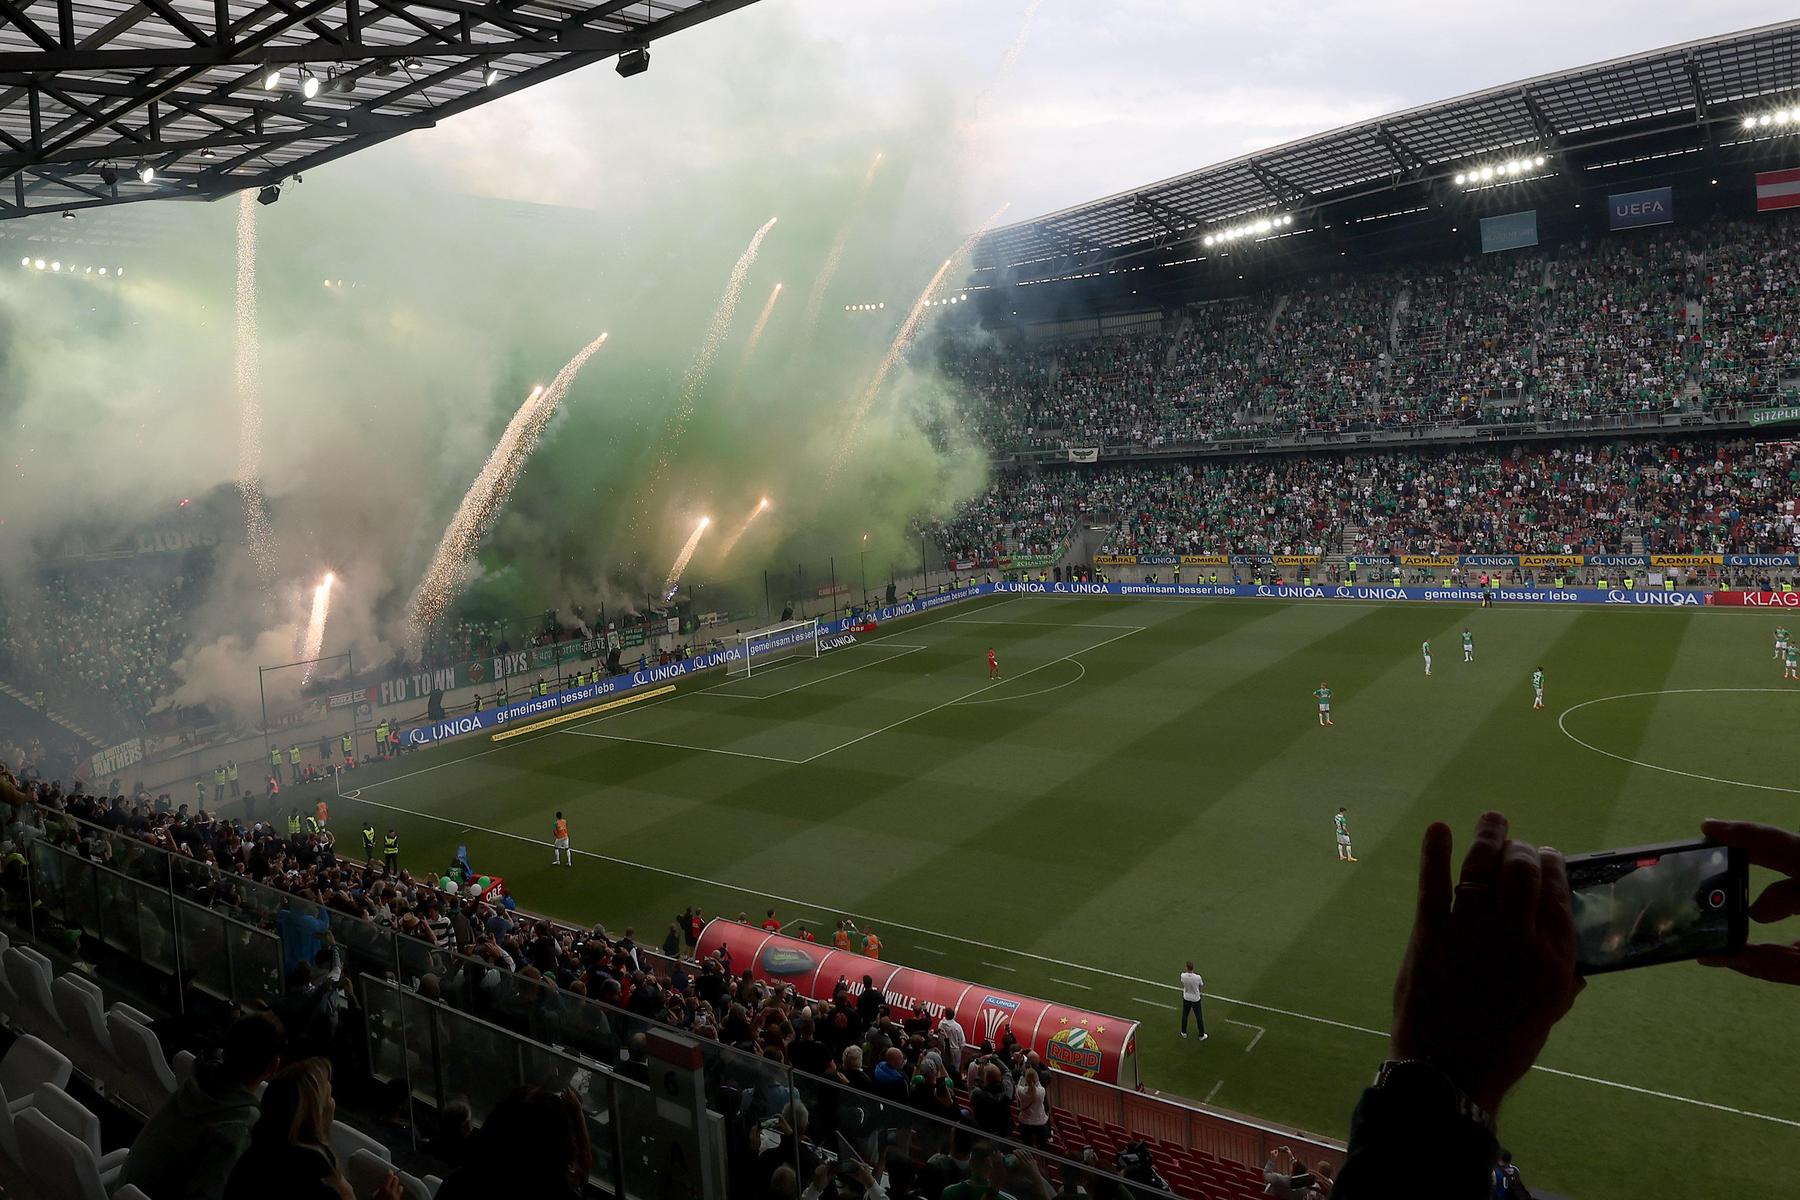 Ins Stadion geschmuggelt: Trotz Pyro-Verbots zündeten Fans wieder ein Feuerwerk